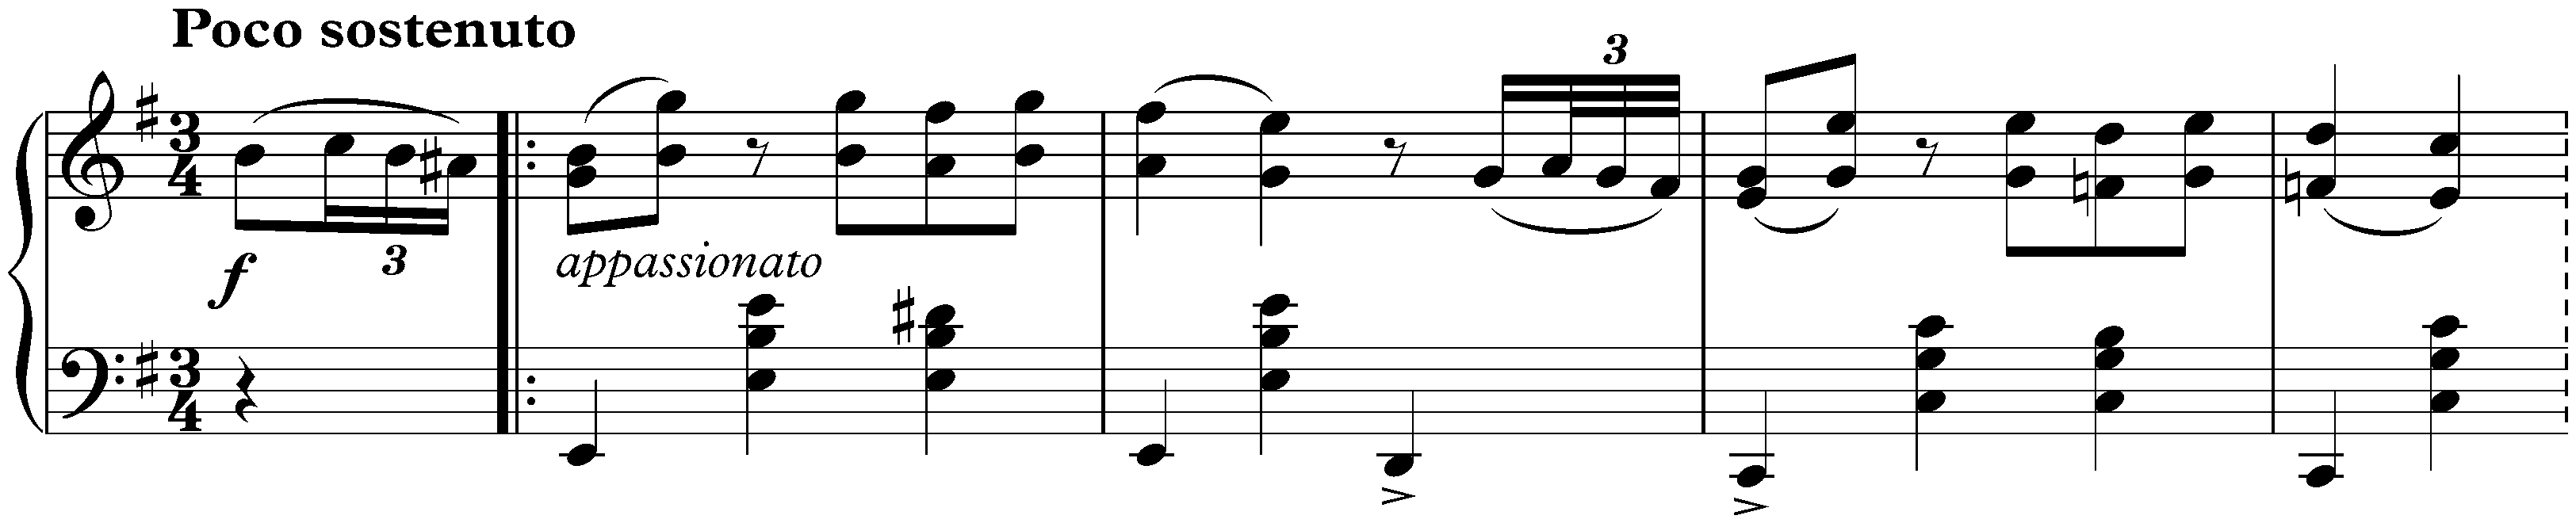 Sixteen Waltzes, op. 39; 4. E minor